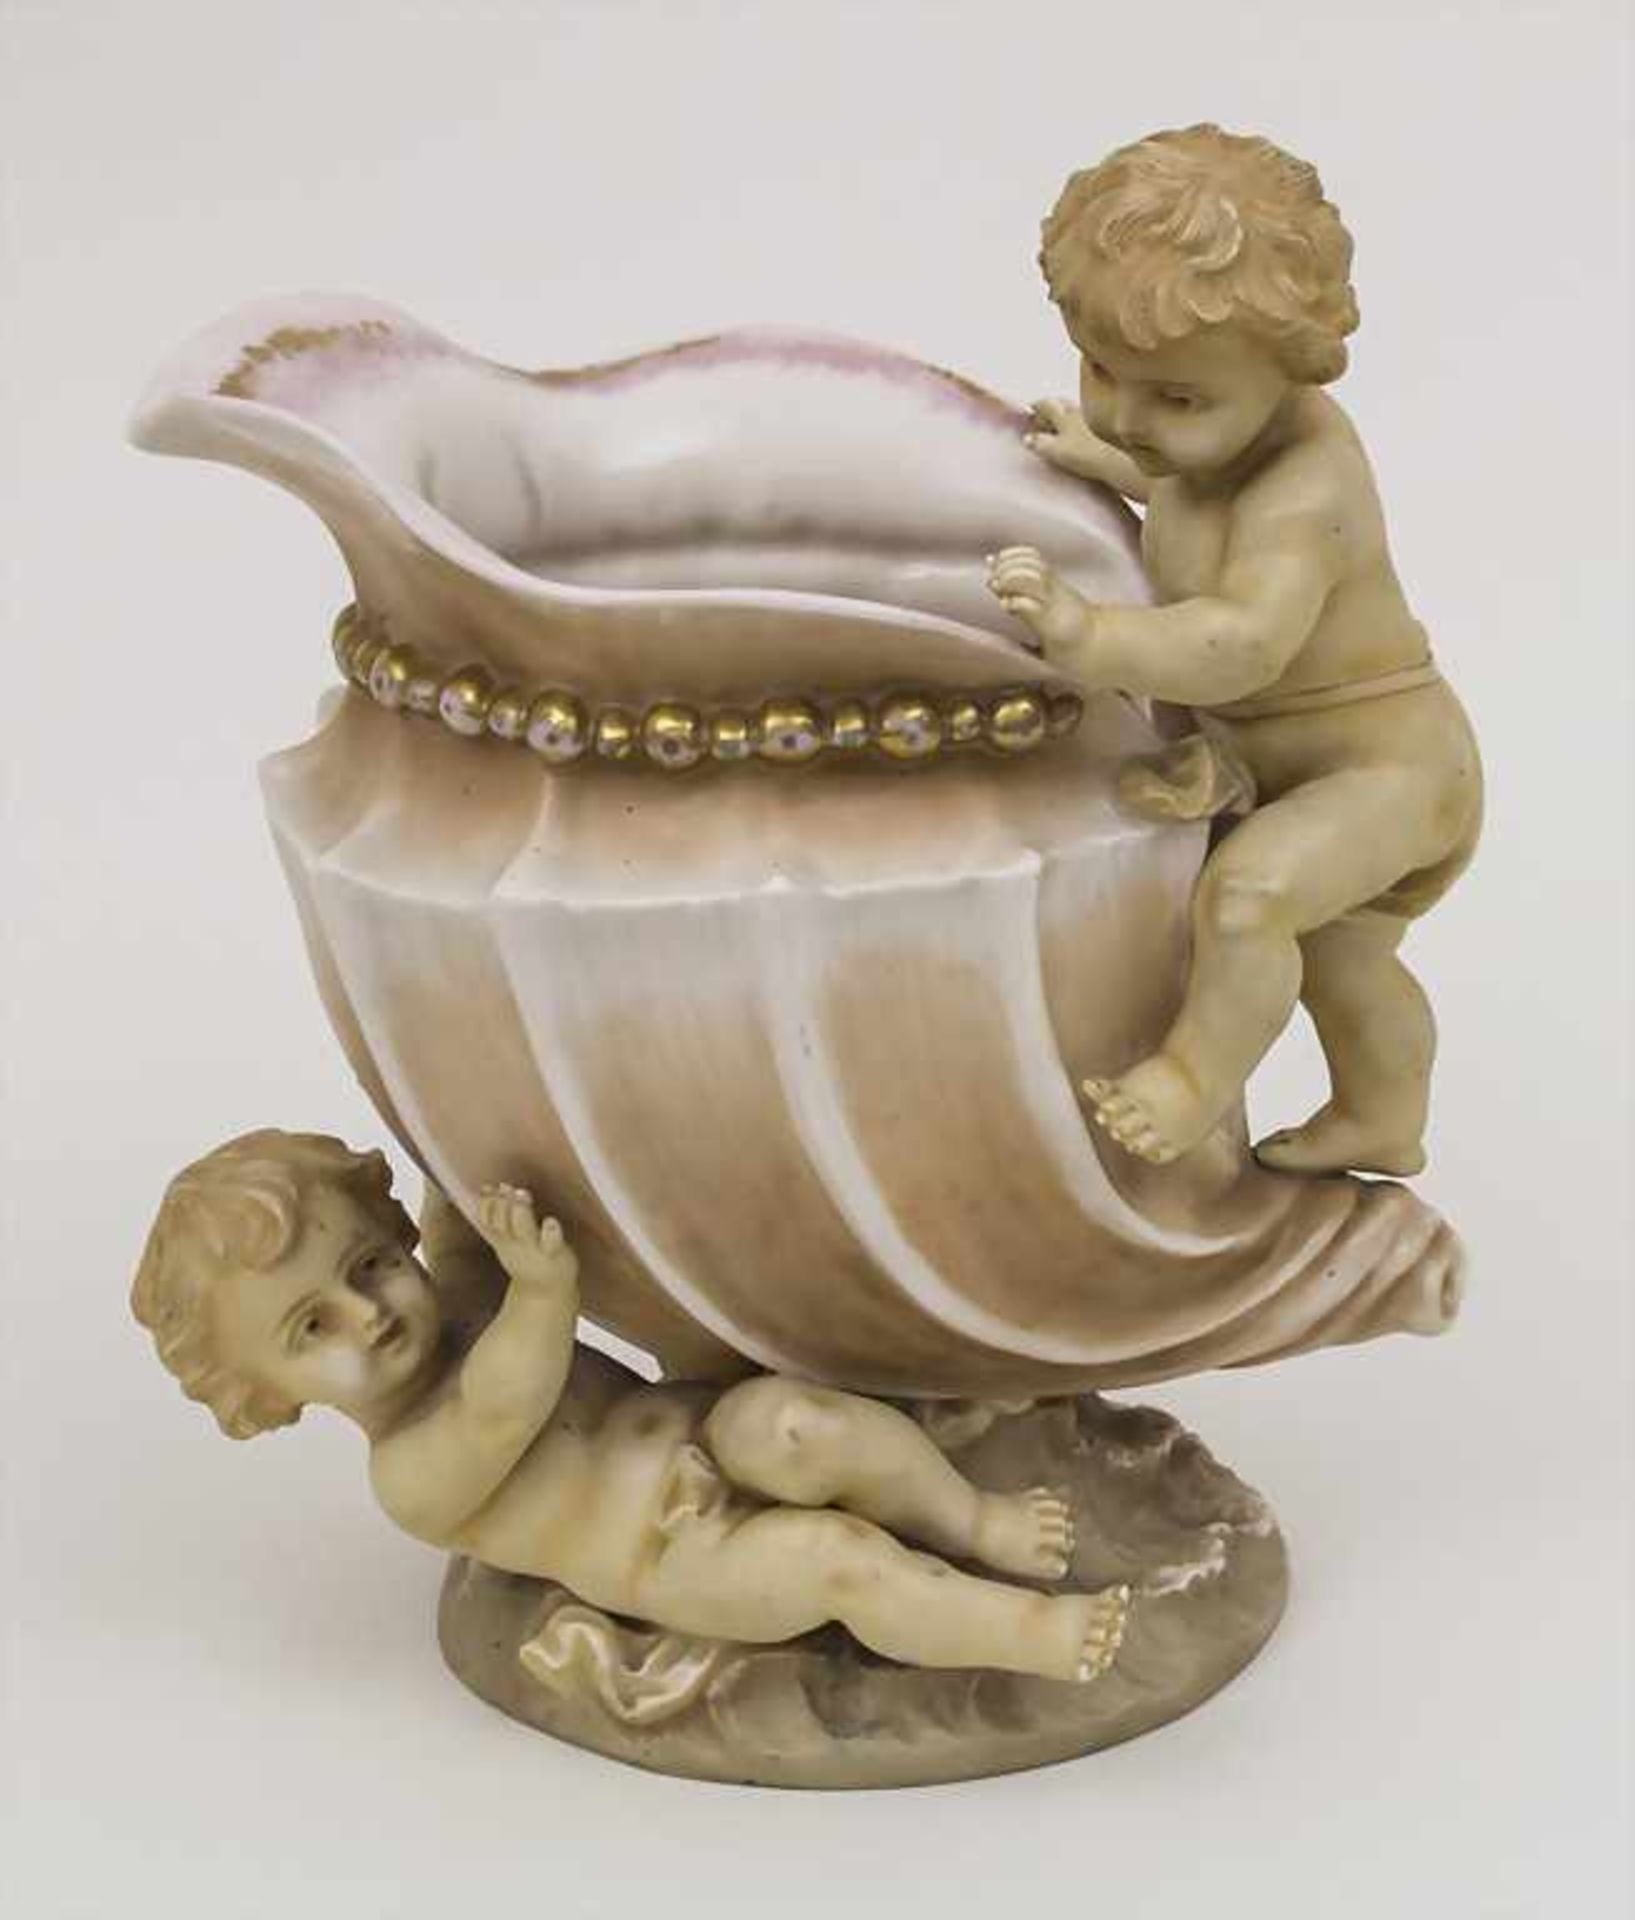 Zierkanne mit Putten / A decorative jug with putti, L. Strauss & Sons, Rudolstadt, um